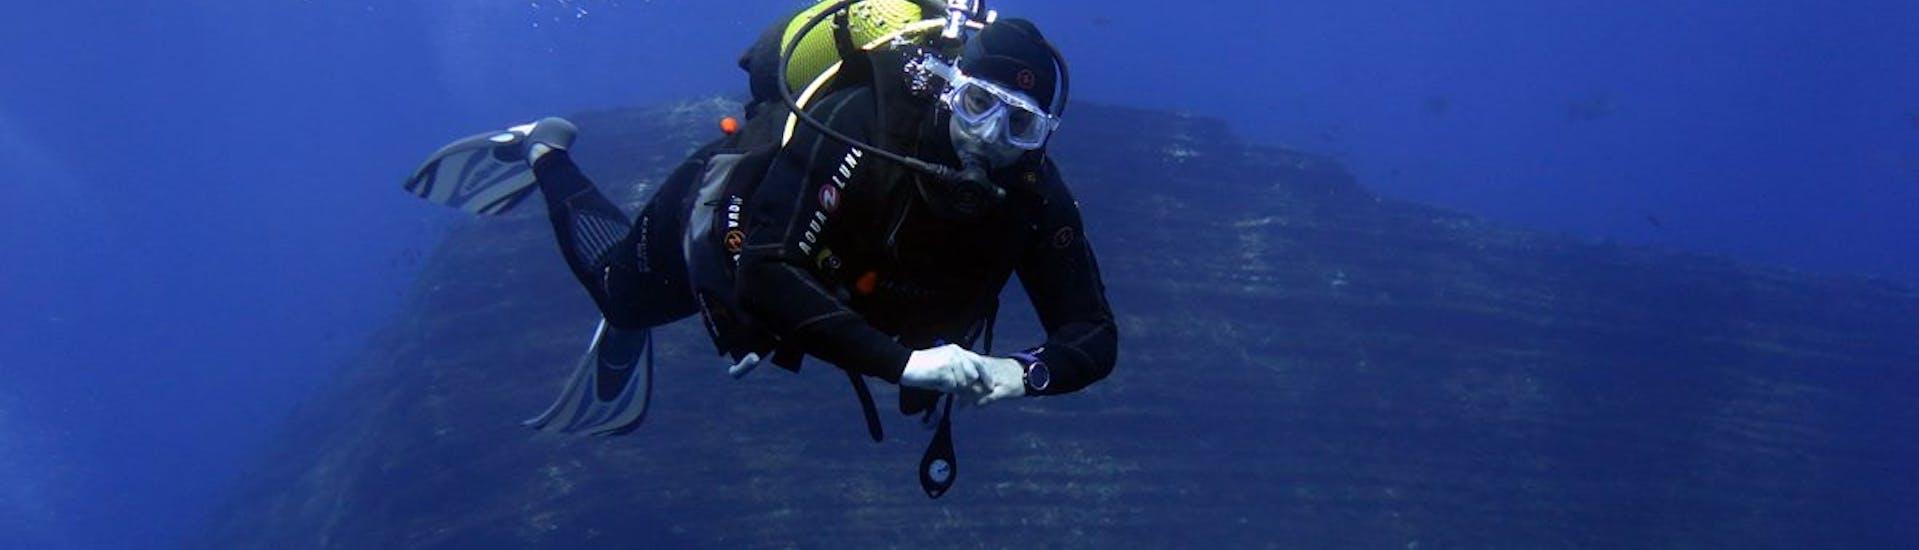 Une personne lors de la Plongée d'exploration à Argelès-sur-Mer pour Plongeurs certifiés avec Magellan Plongée Argelès-sur-Mer.